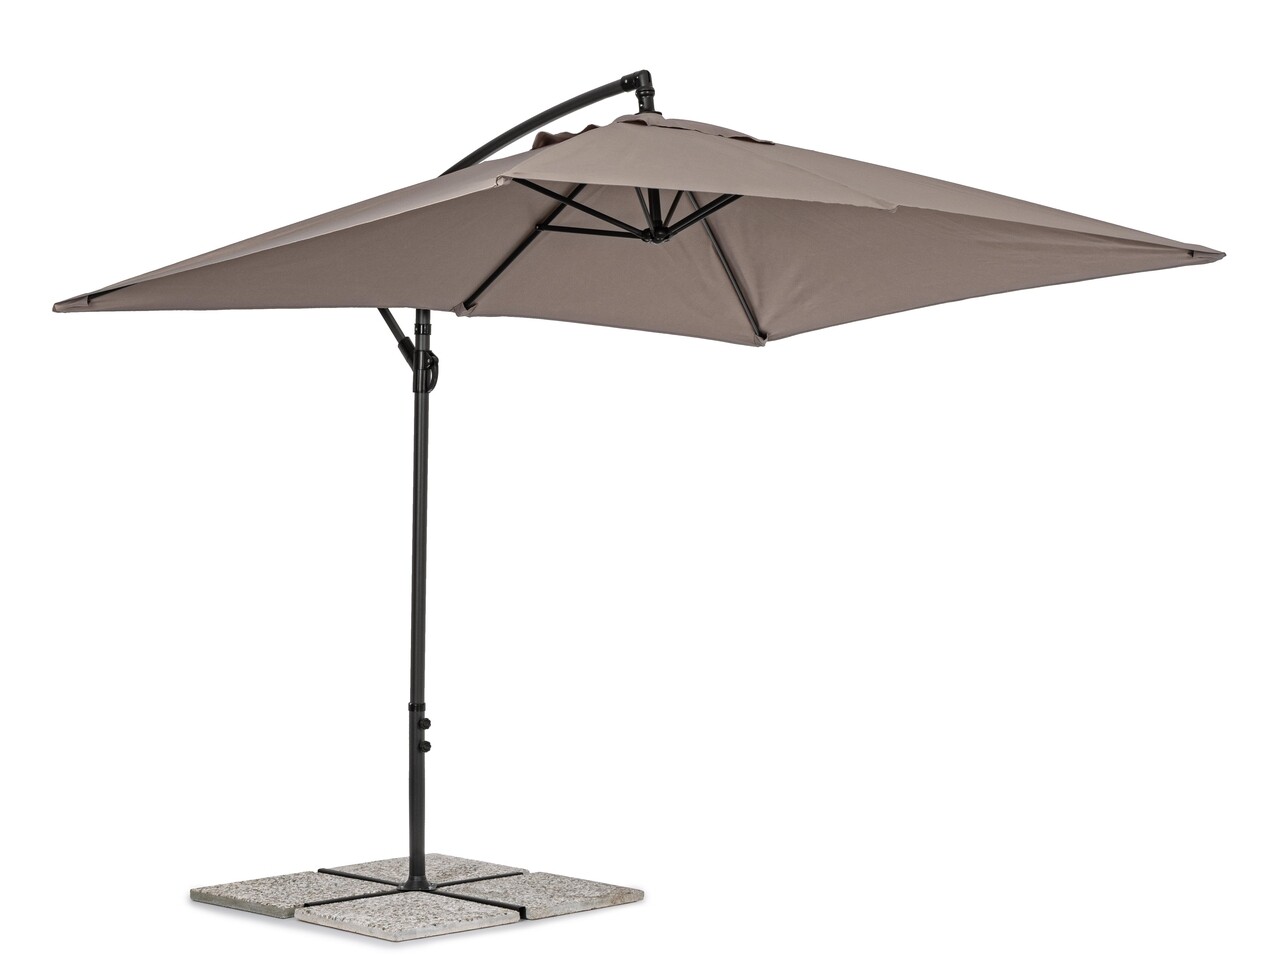 Texas Terasz/kerti napernyő, Bizzotto, 300 x 200 x 260 cm, oszlop 48 mm, 360° forgó oszlop, acél/poliészter, grézs